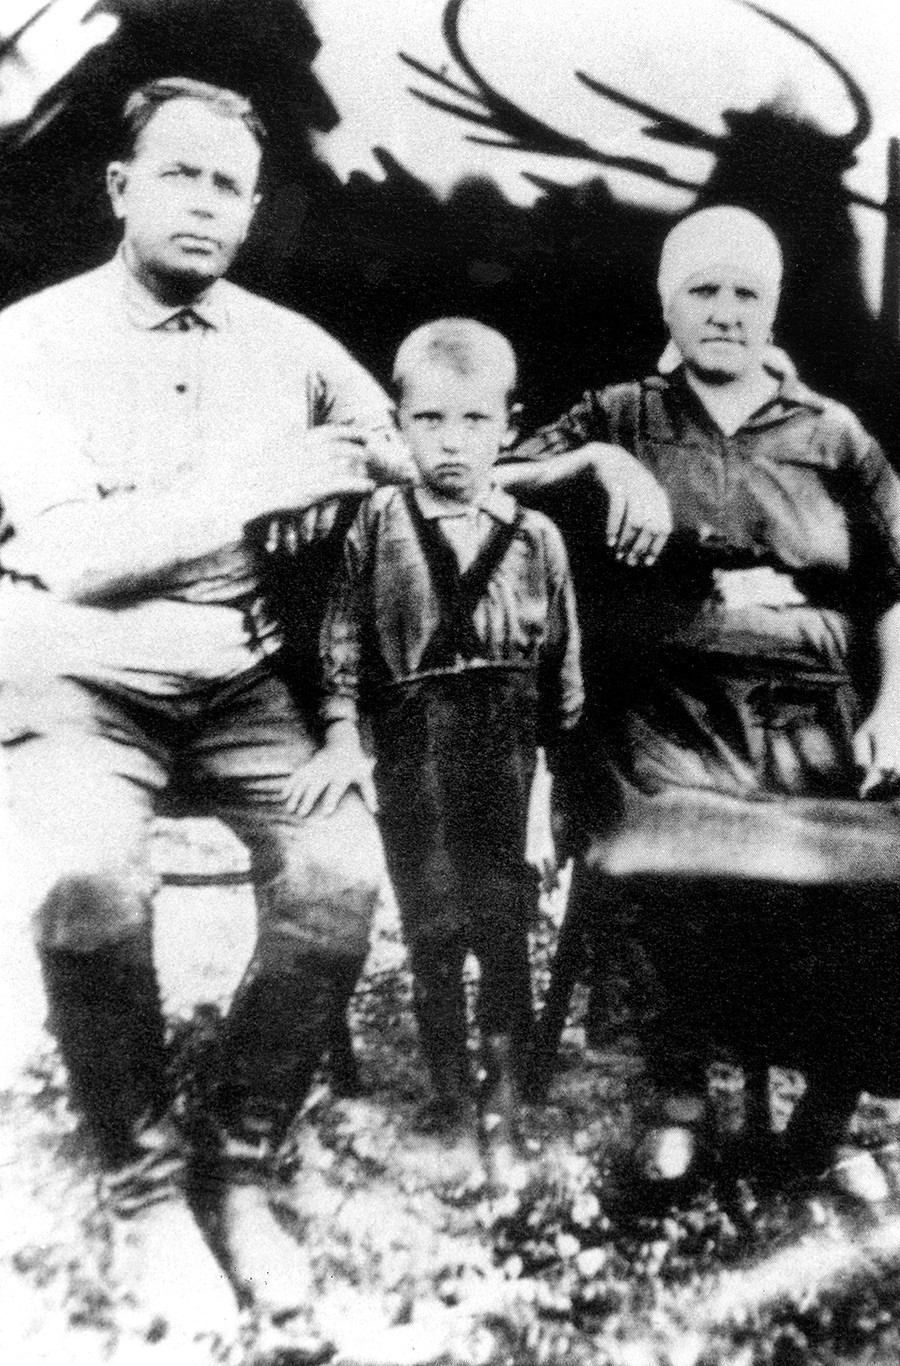 Gorbatschow als 4-jähriges Kind in Priwolnoje, um 1935
